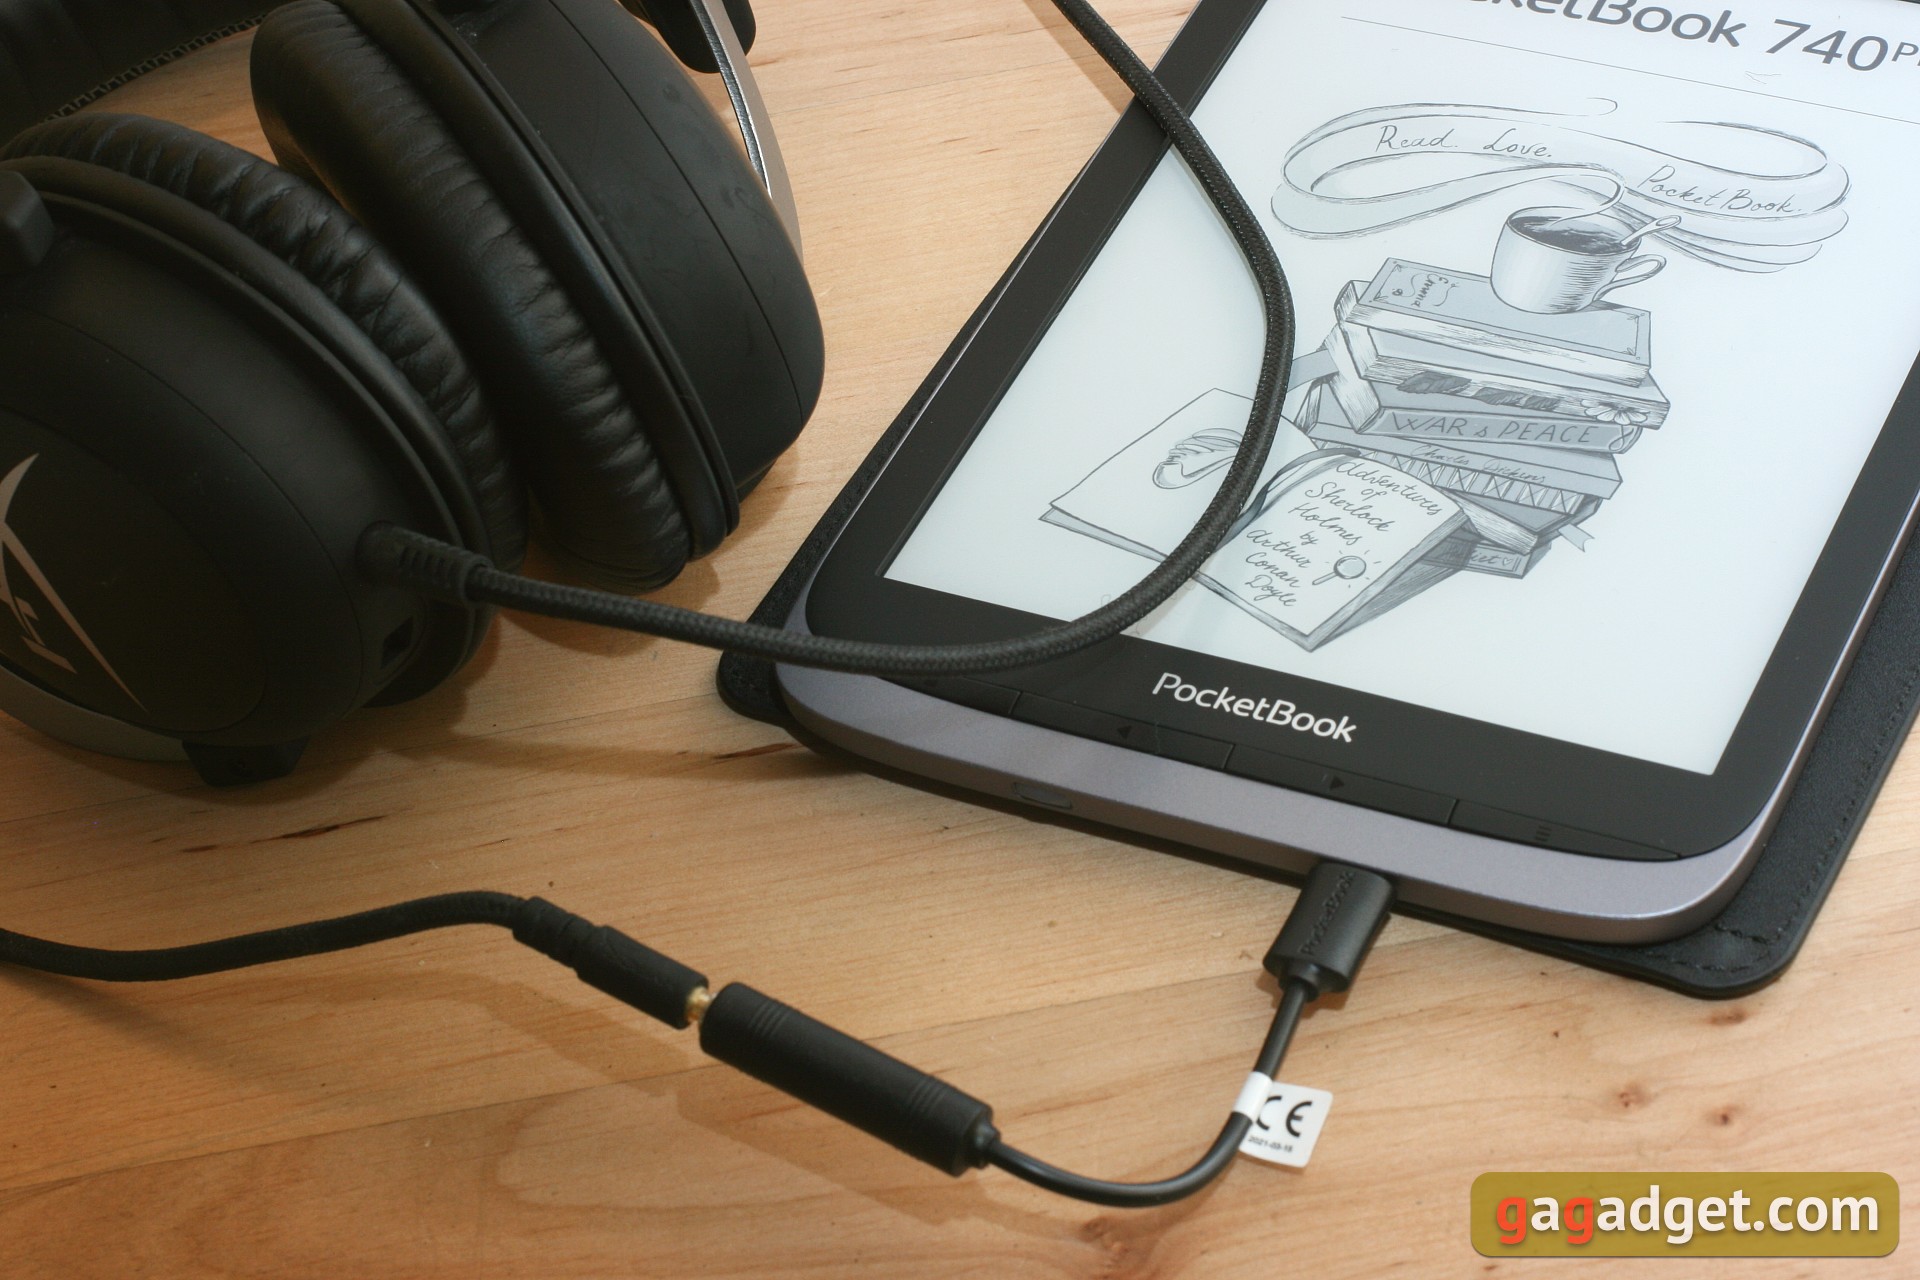 Обзор Pocketbook 740 Pro: защищённый ридер с поддержкой аудио-61